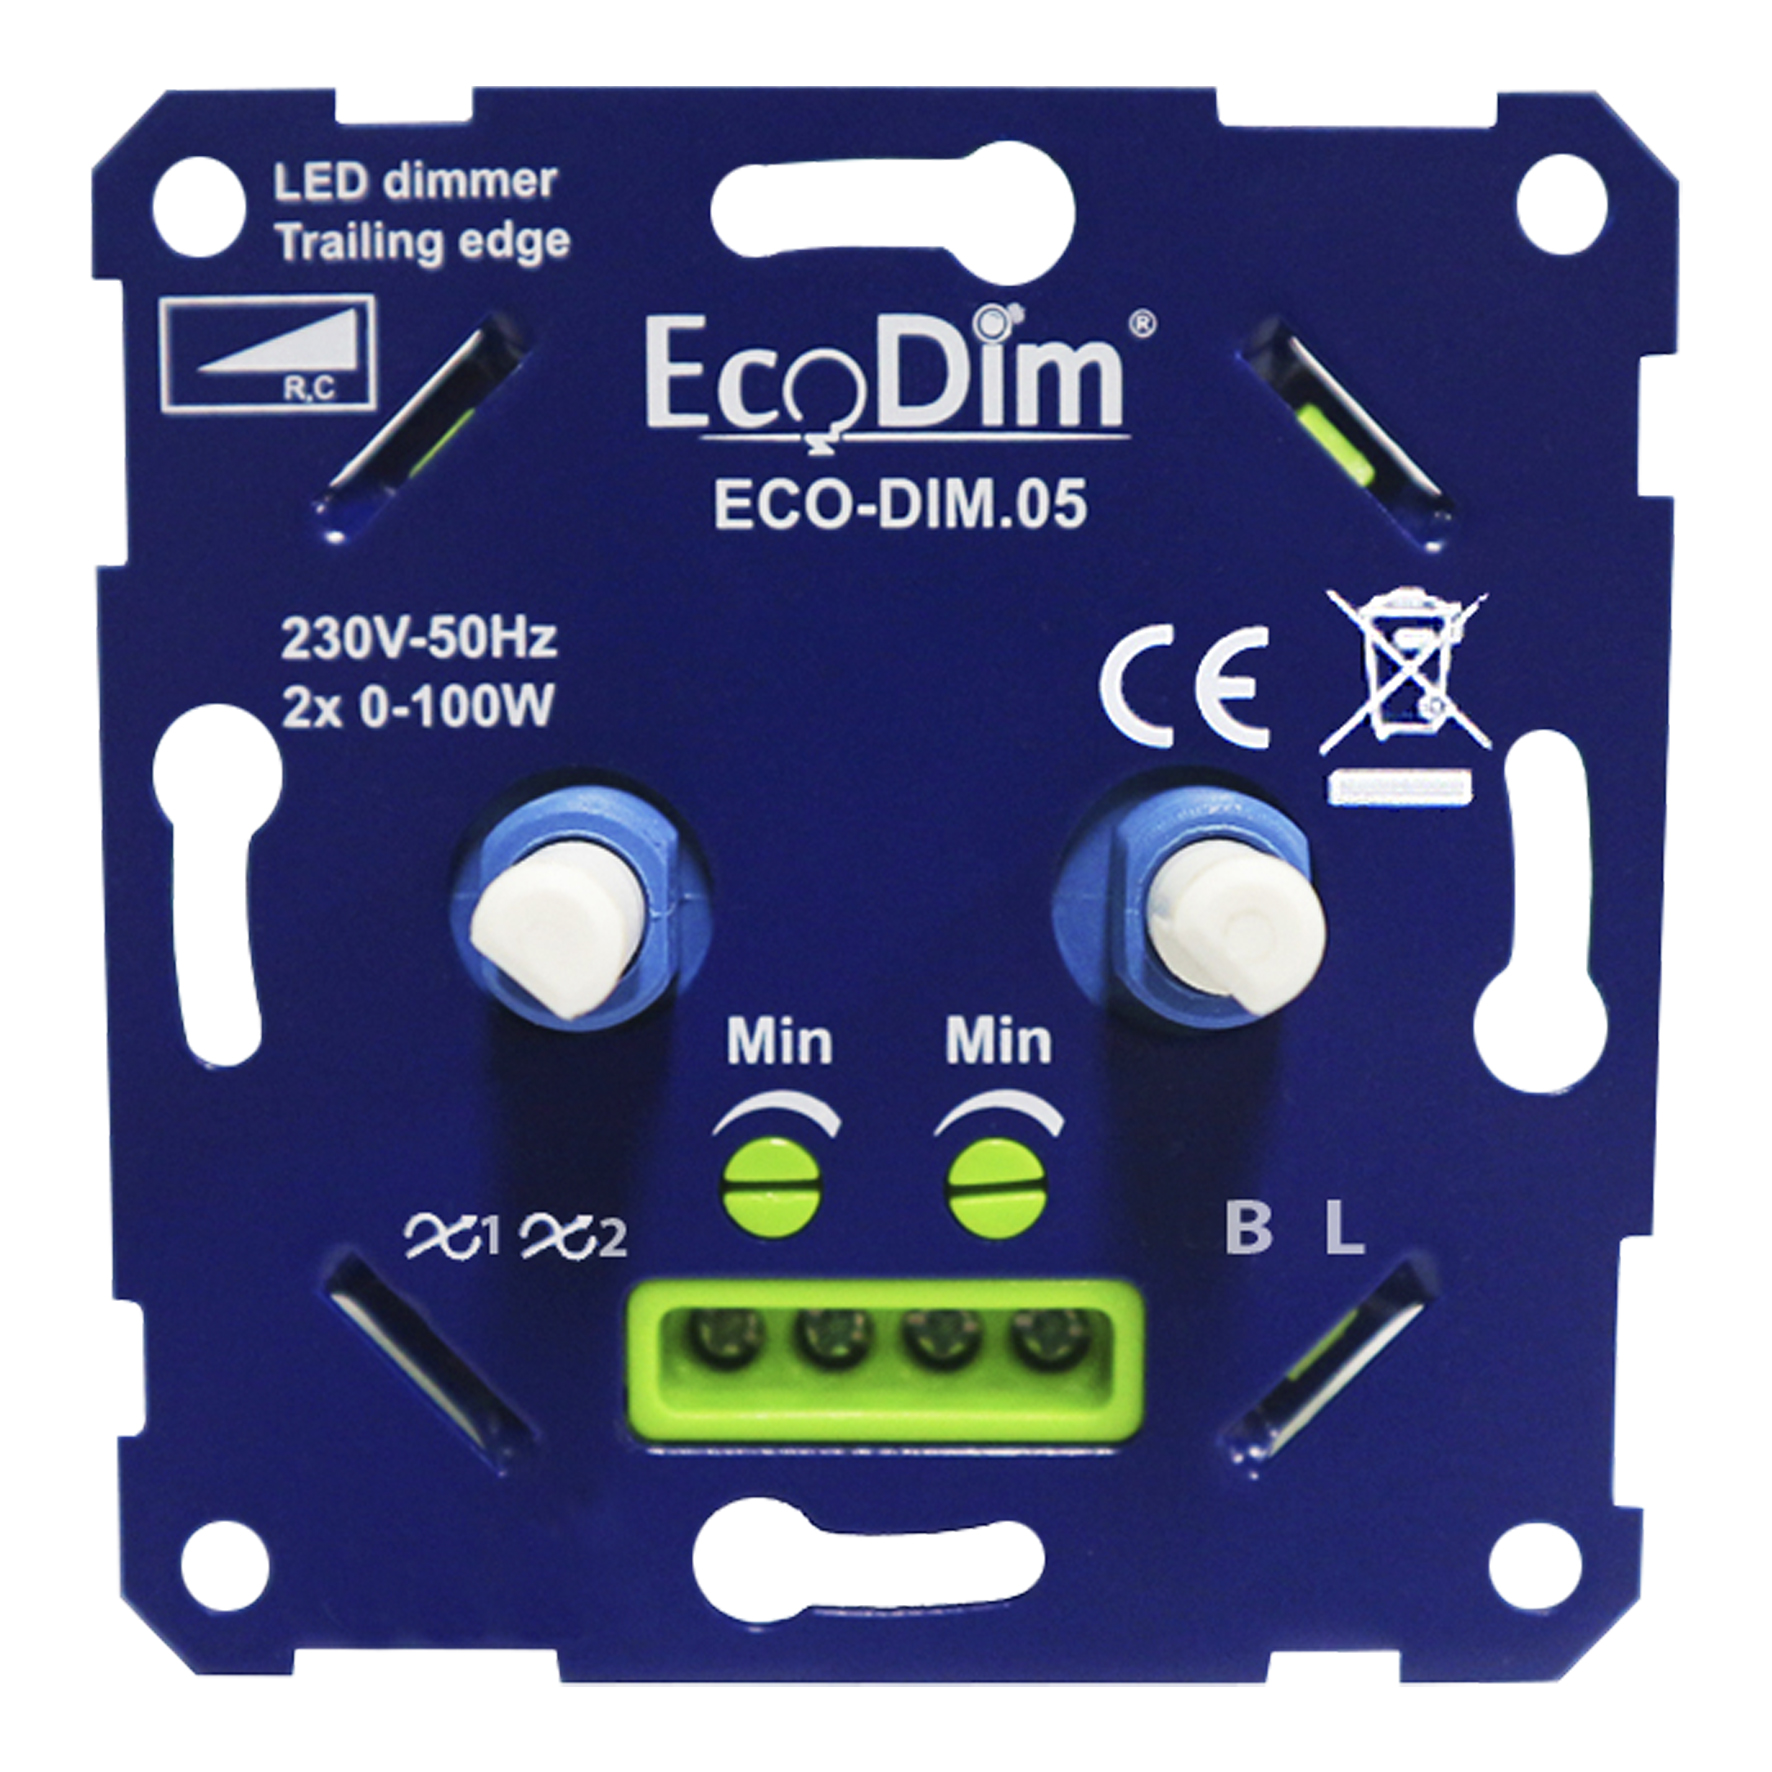 EcoDim ECO-DIM.05 Variateur Duo mural LED 2x 0-100W Coupure de phase